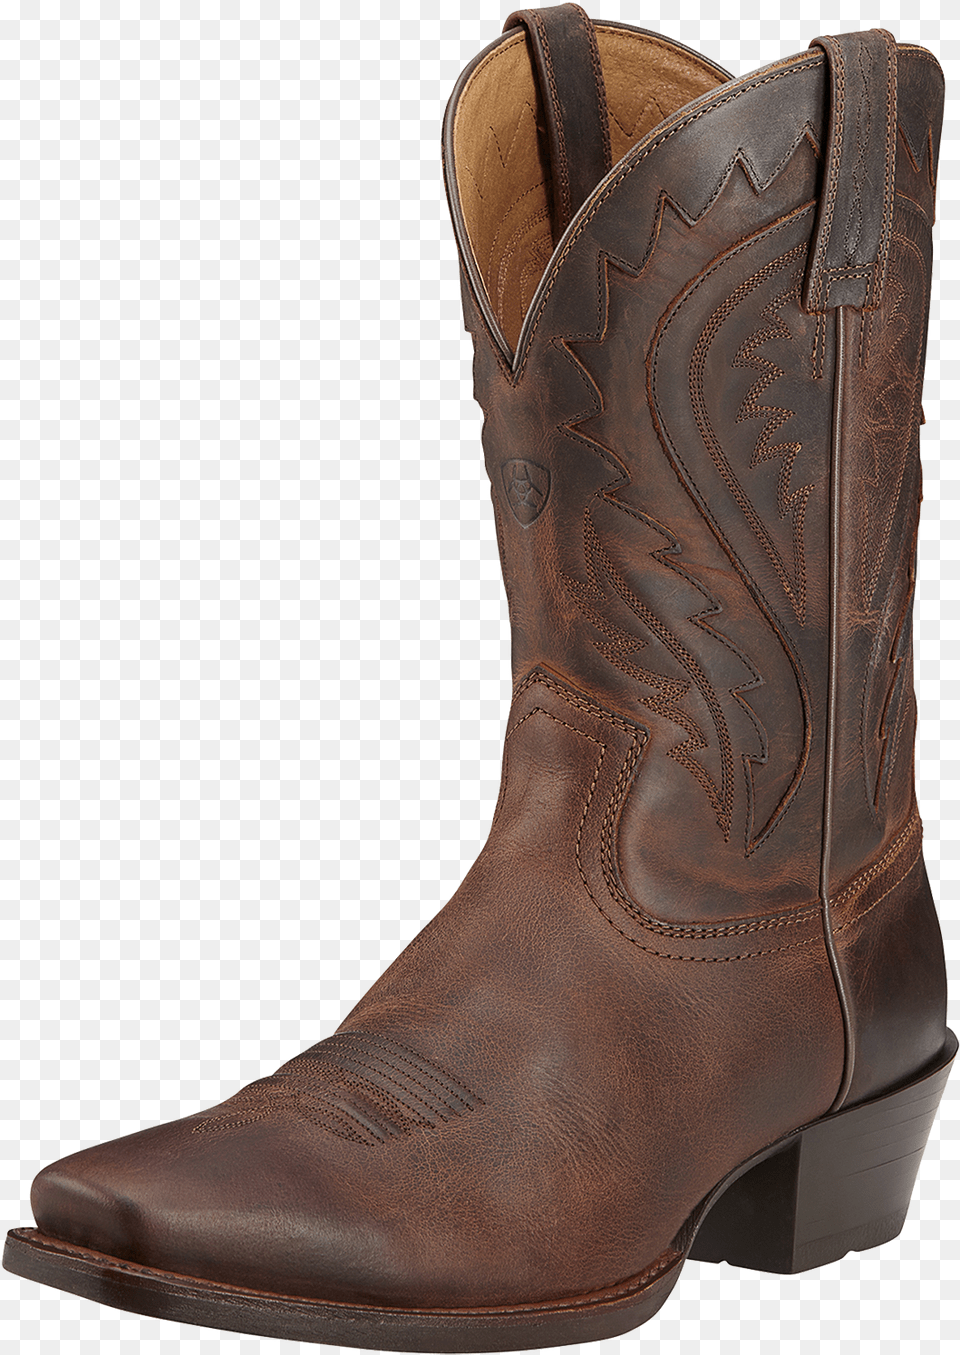 Ariat Men S Square Toe Legend Phoenixcowboy Boot Cowboy Boot, Clothing, Footwear, Shoe, Cowboy Boot Free Transparent Png